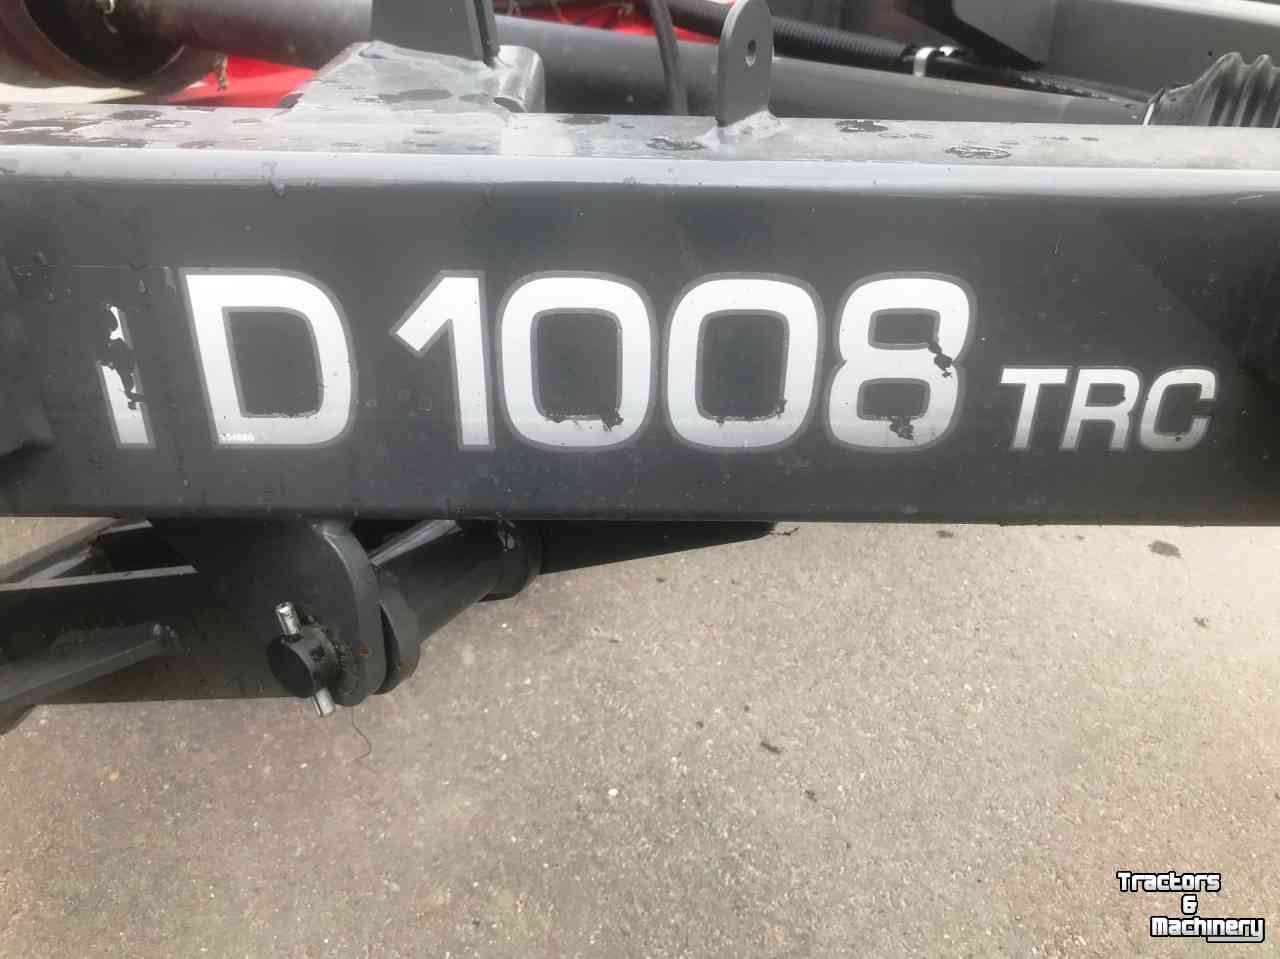 Tedder MF TD 1008 TRC